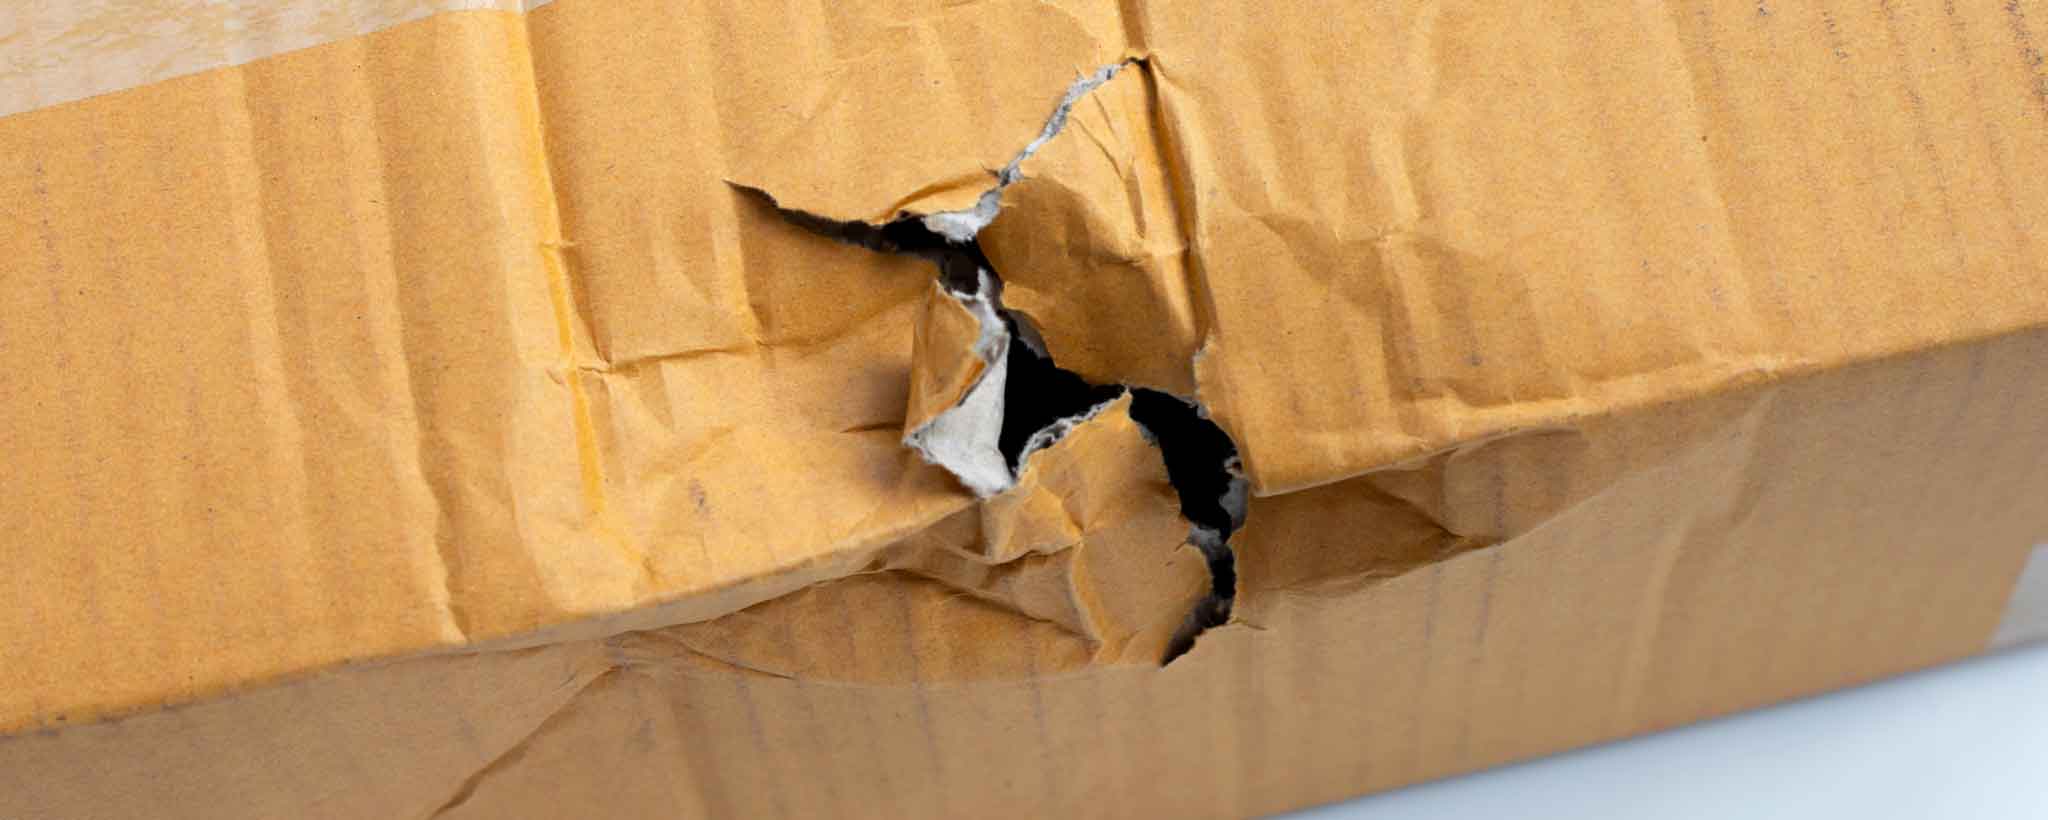 'Cardboard box damage'